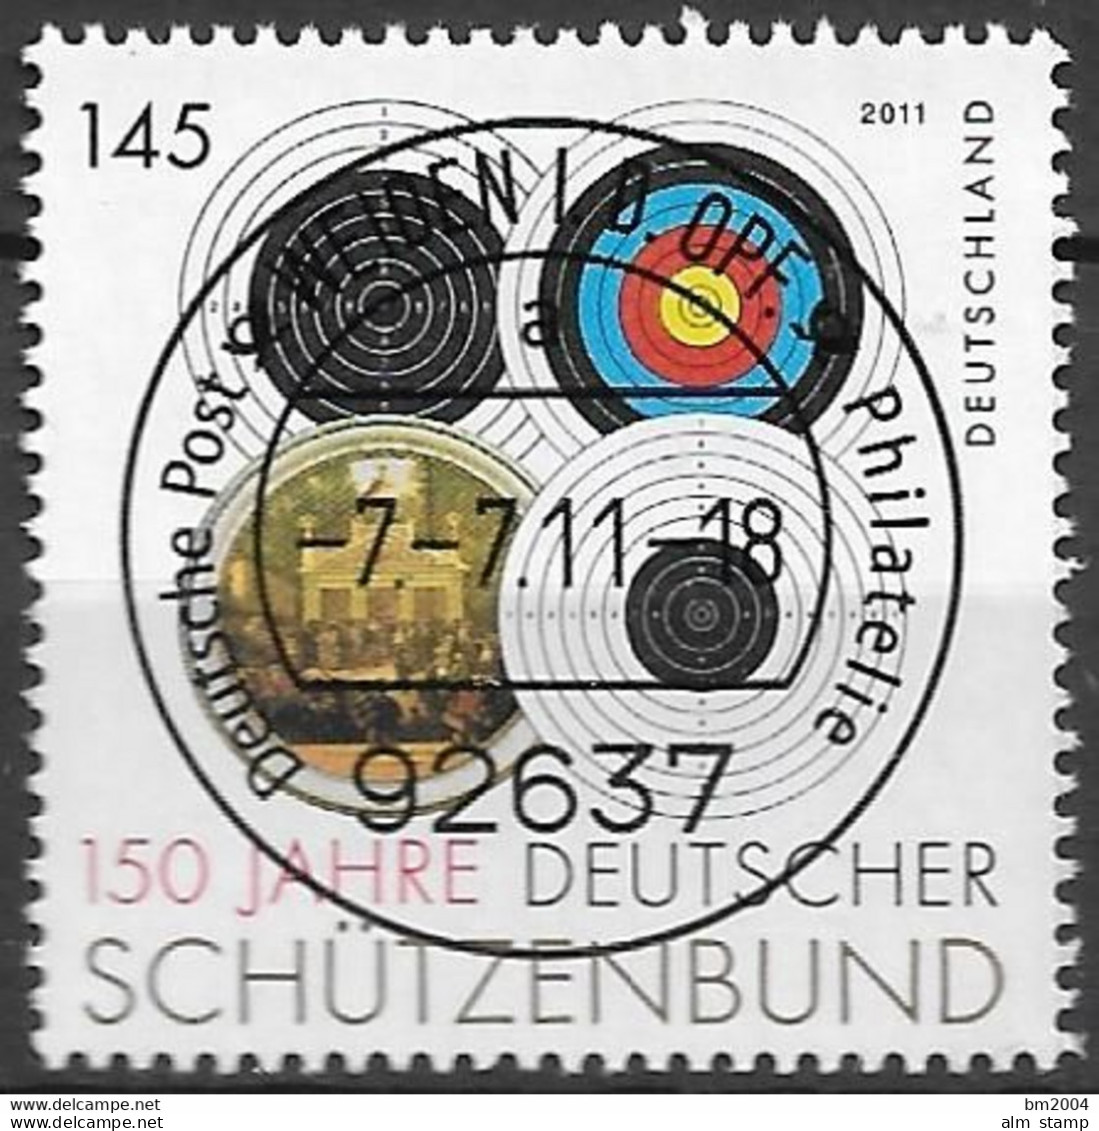 2011  Deutschland Allem. Fed. Germany  Mi. 2881 FD- Used Weiden 150 Jahre Deutscher Schützenbund - Gebraucht